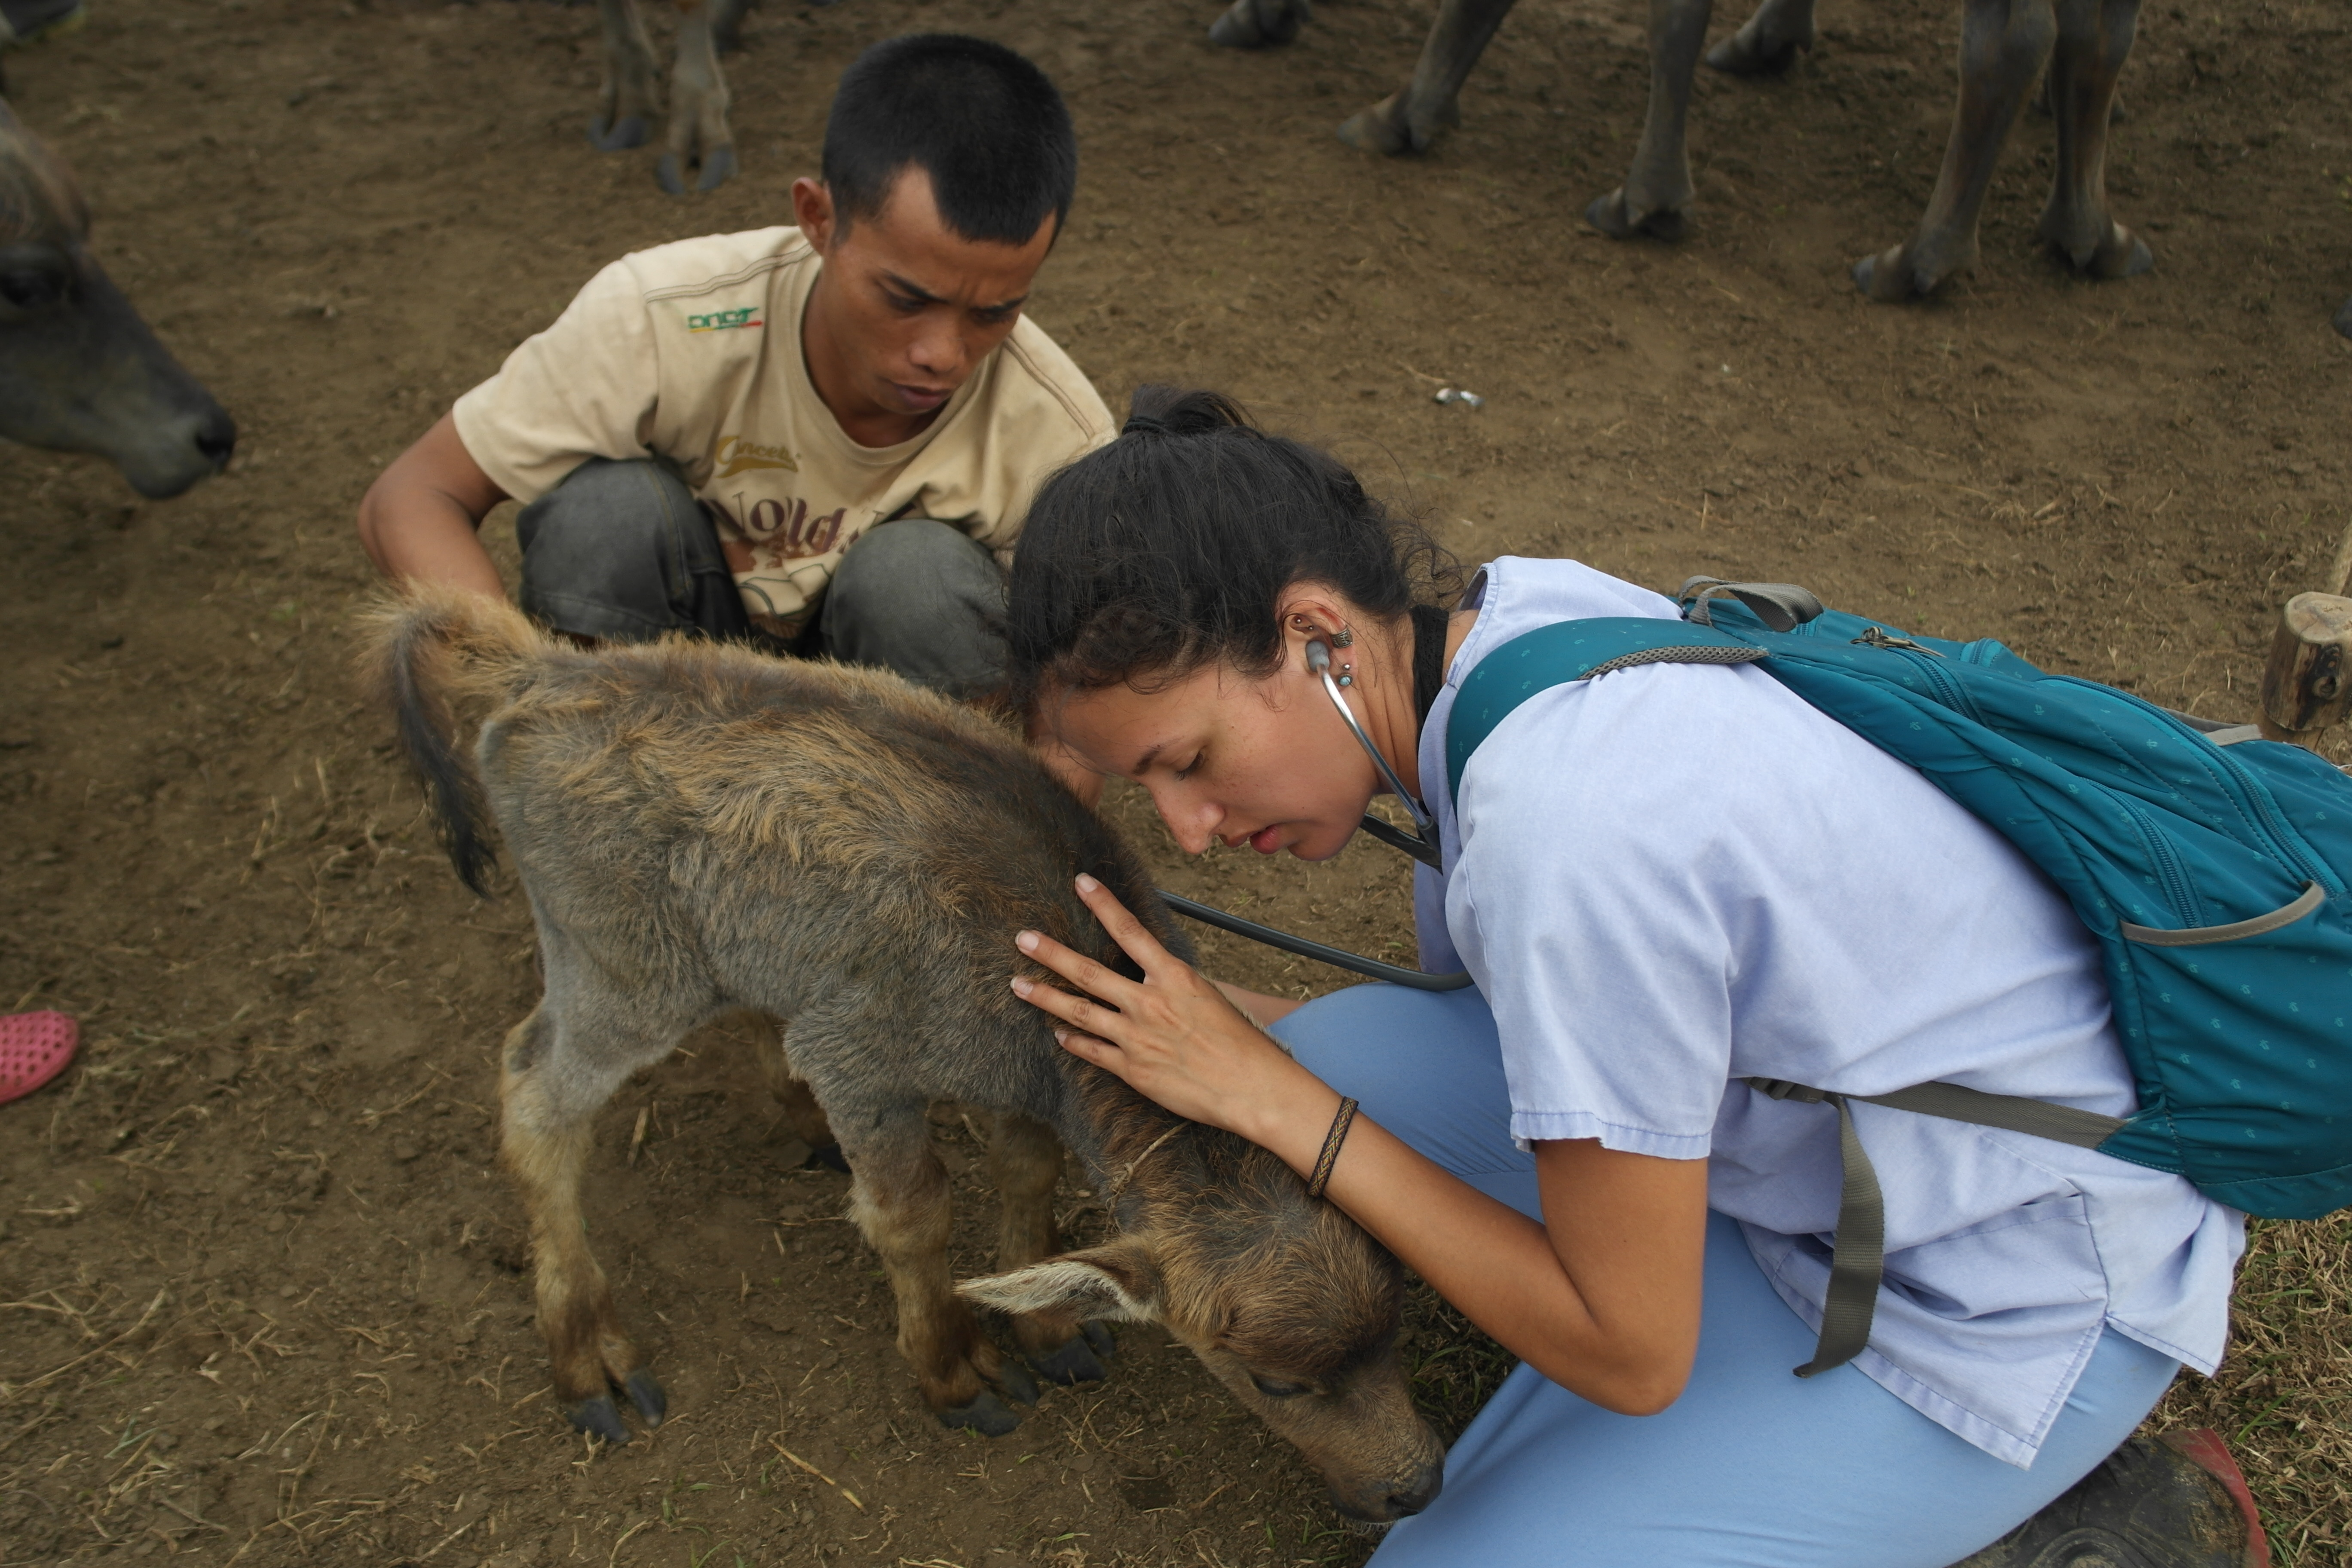 Mariacamila Garcia Estrella evaluating livestock in Indonesia